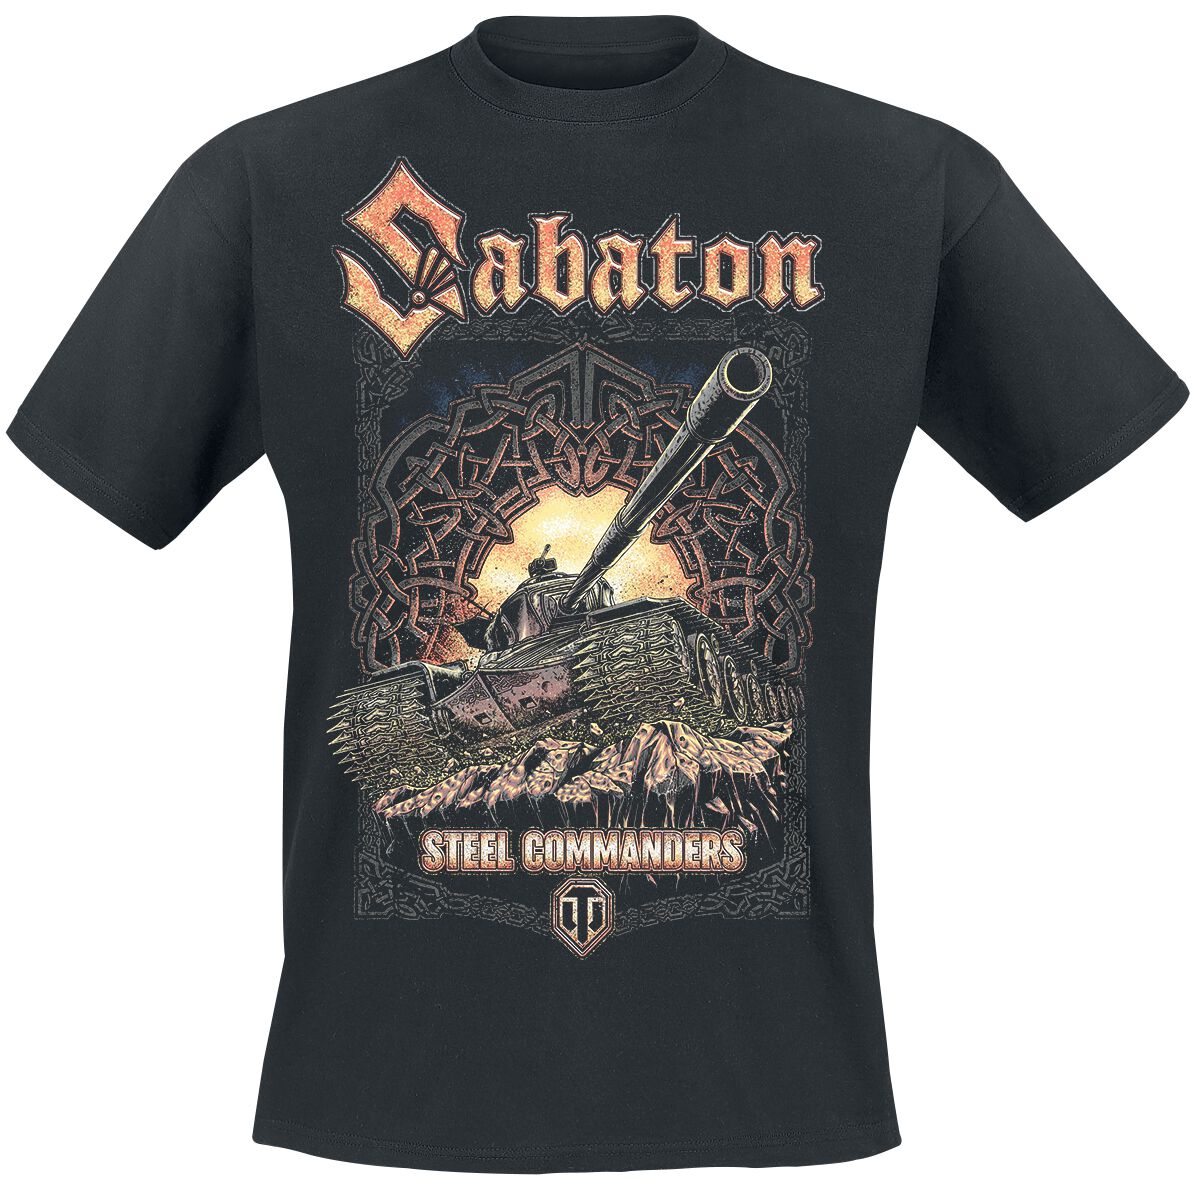 Sabaton - Gaming T-Shirt - World Of Tanks - S bis XXL - für Männer - Größe XXL - schwarz  - Lizenziertes Merchandise!